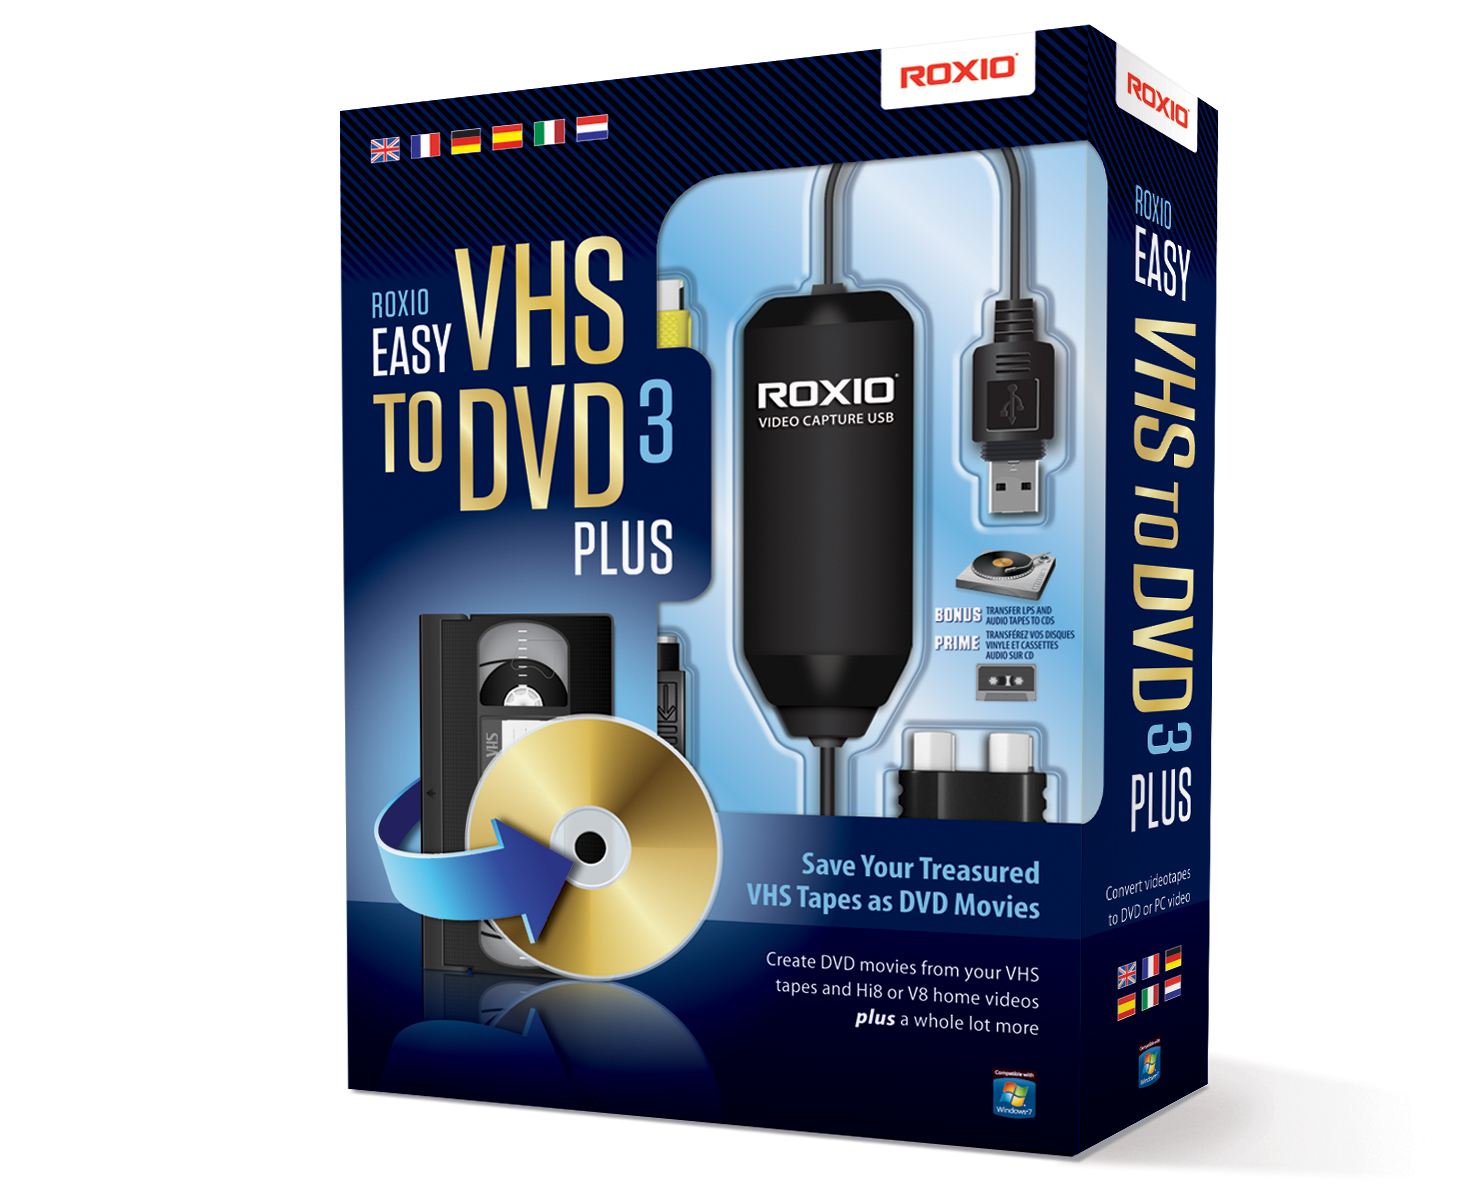 Corel Roxio Easy VHS to DVD 3 Plus carte d'acquisition vidéo USB 2.0